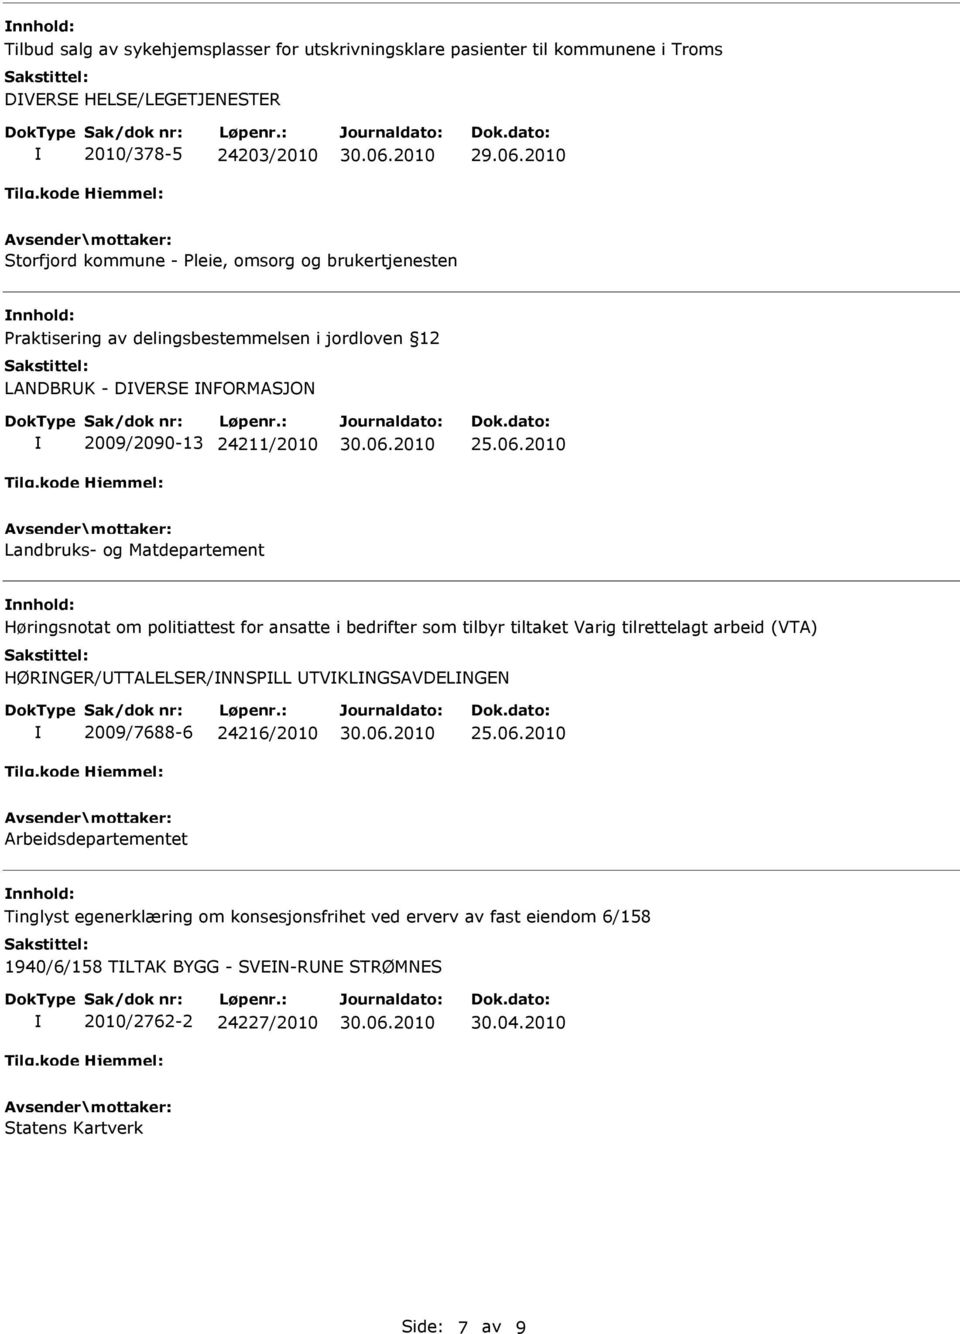 2010 Landbruks- og Matdepartement Høringsnotat om politiattest for ansatte i bedrifter som tilbyr tiltaket Varig tilrettelagt arbeid (VTA) HØRNGER/TTALELSER/NNSPLL